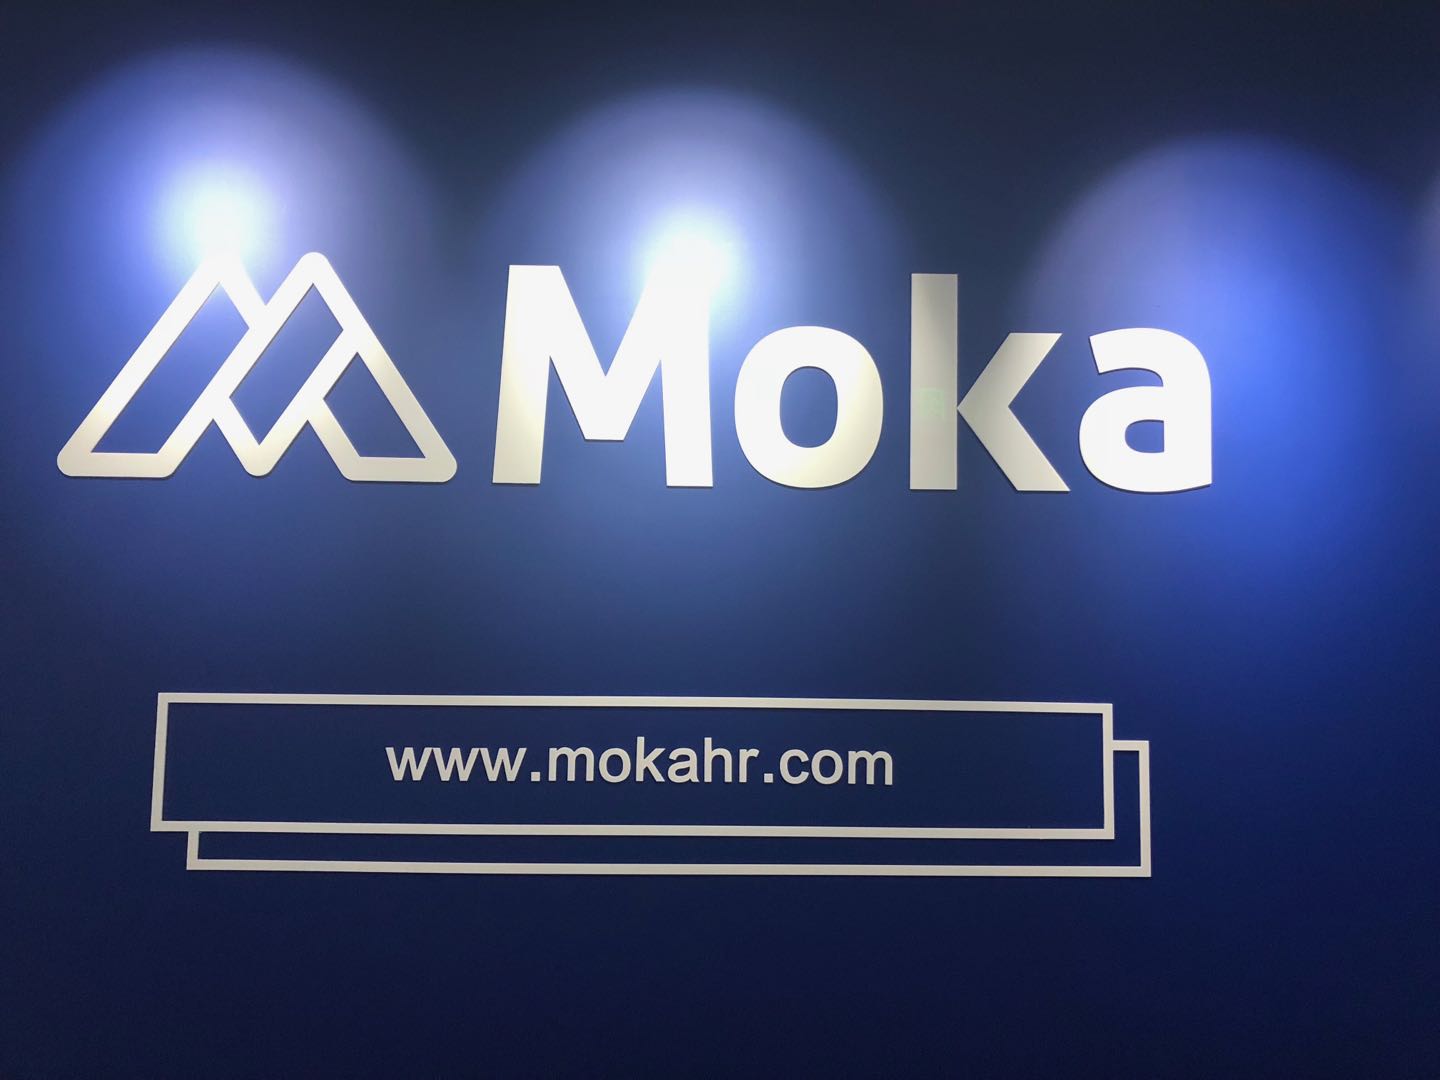 MokaHR荣获 “2018中国招聘与任用供应商价值大奖”-Moka智能化招聘系统